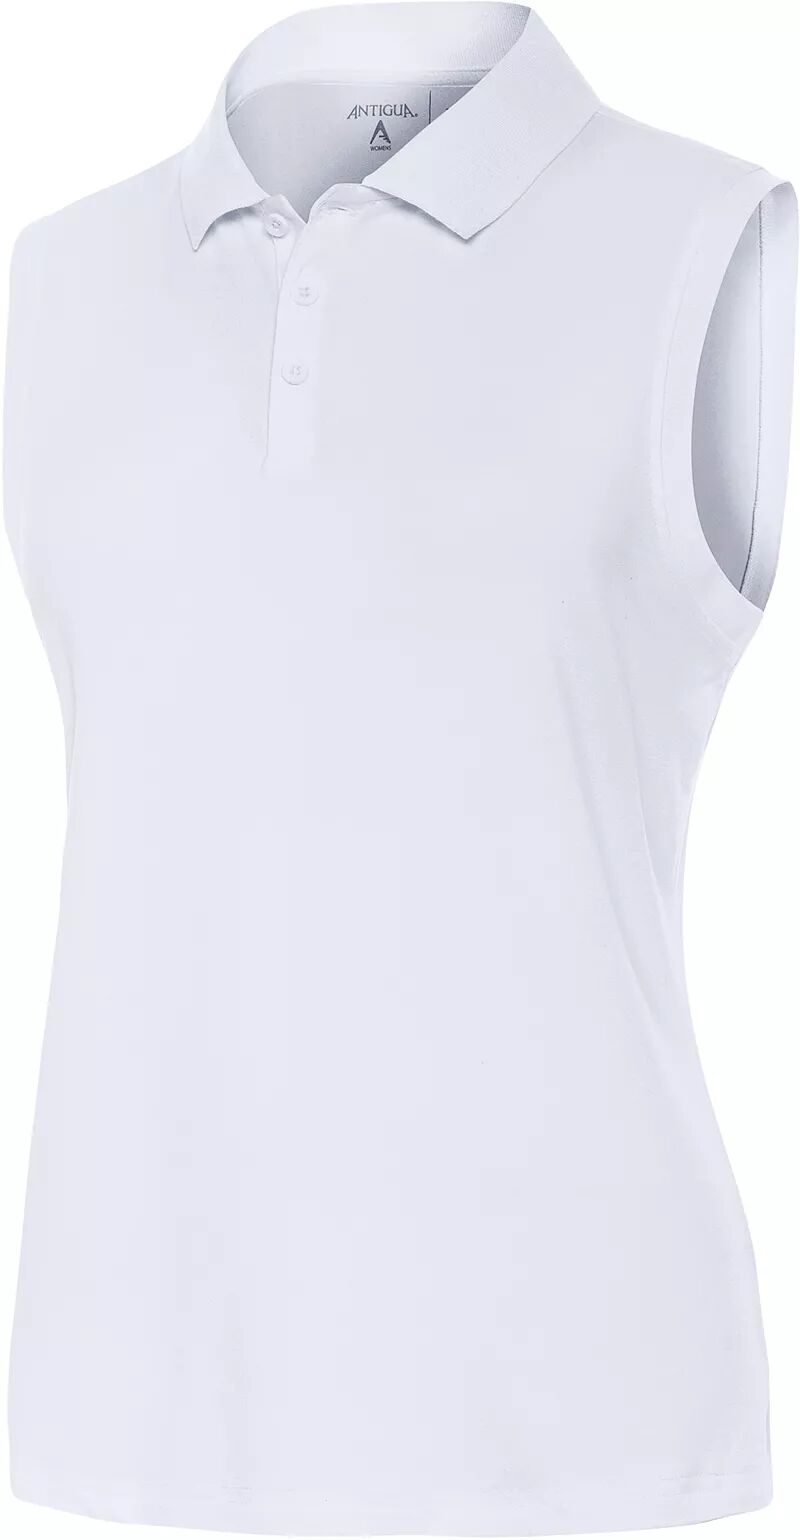 Женская рубашка-поло для гольфа без рукавов Antigua Recap